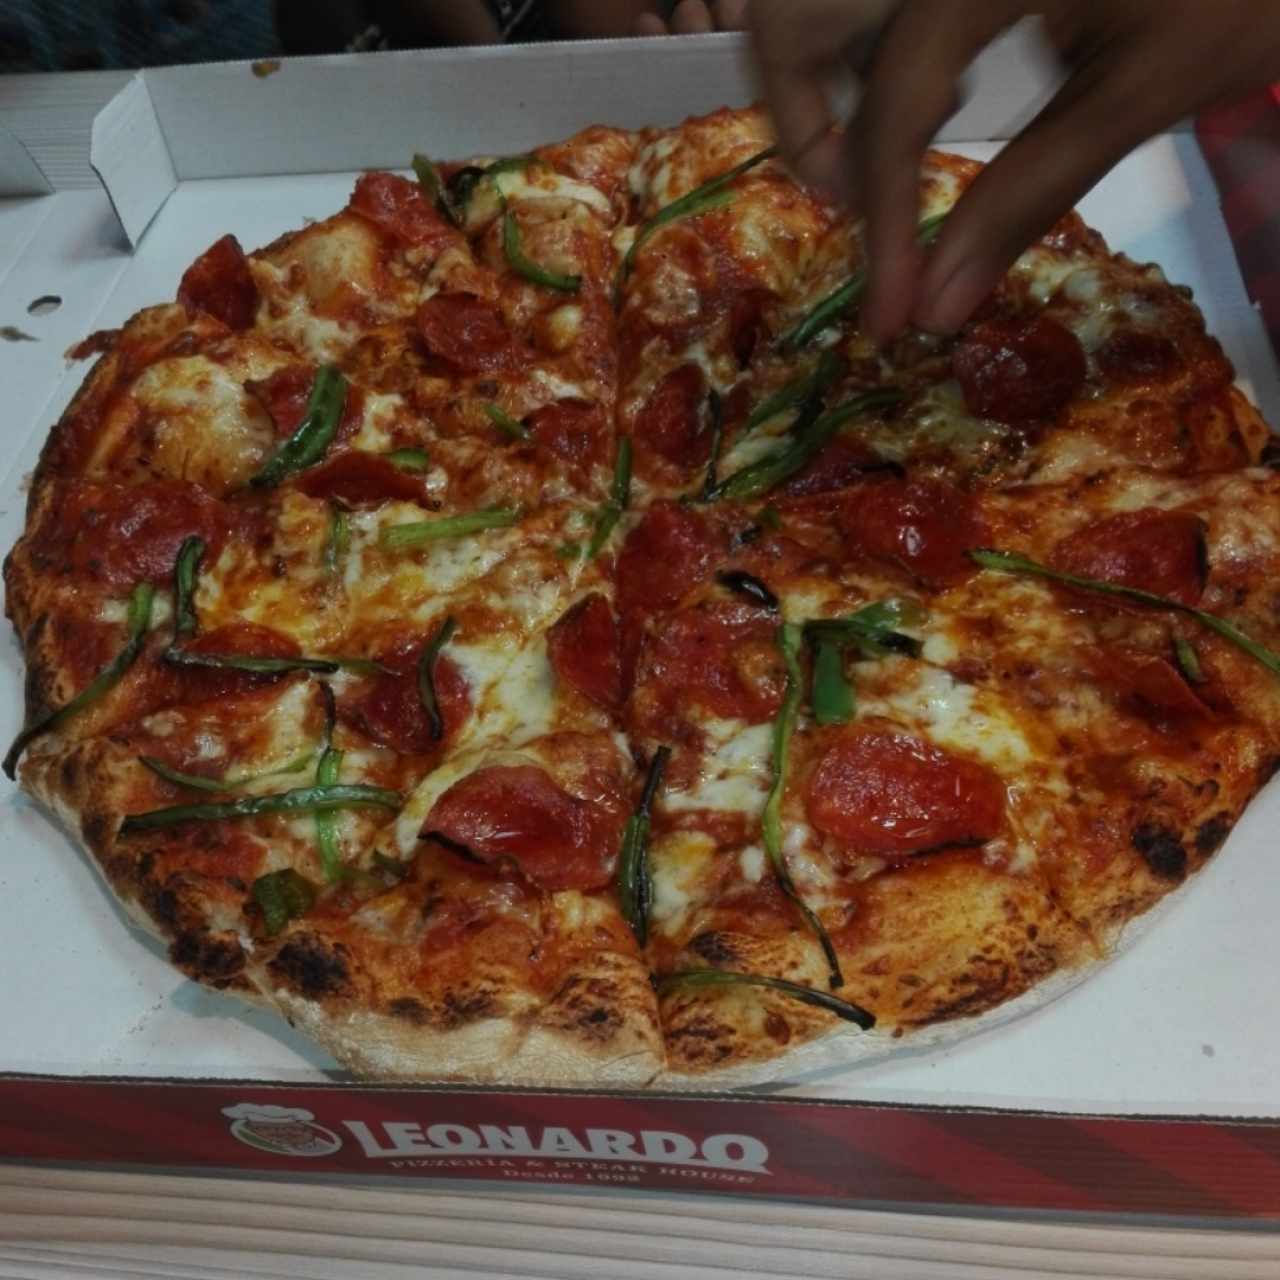 las pizza de Leonardo también  son una opción  para el fin de semana son divinas económicas y con una buena atención  limpió  siempre buscamos lo mejor para los pequeños de la casa para que disfruten de ricas pizza🙌🍕